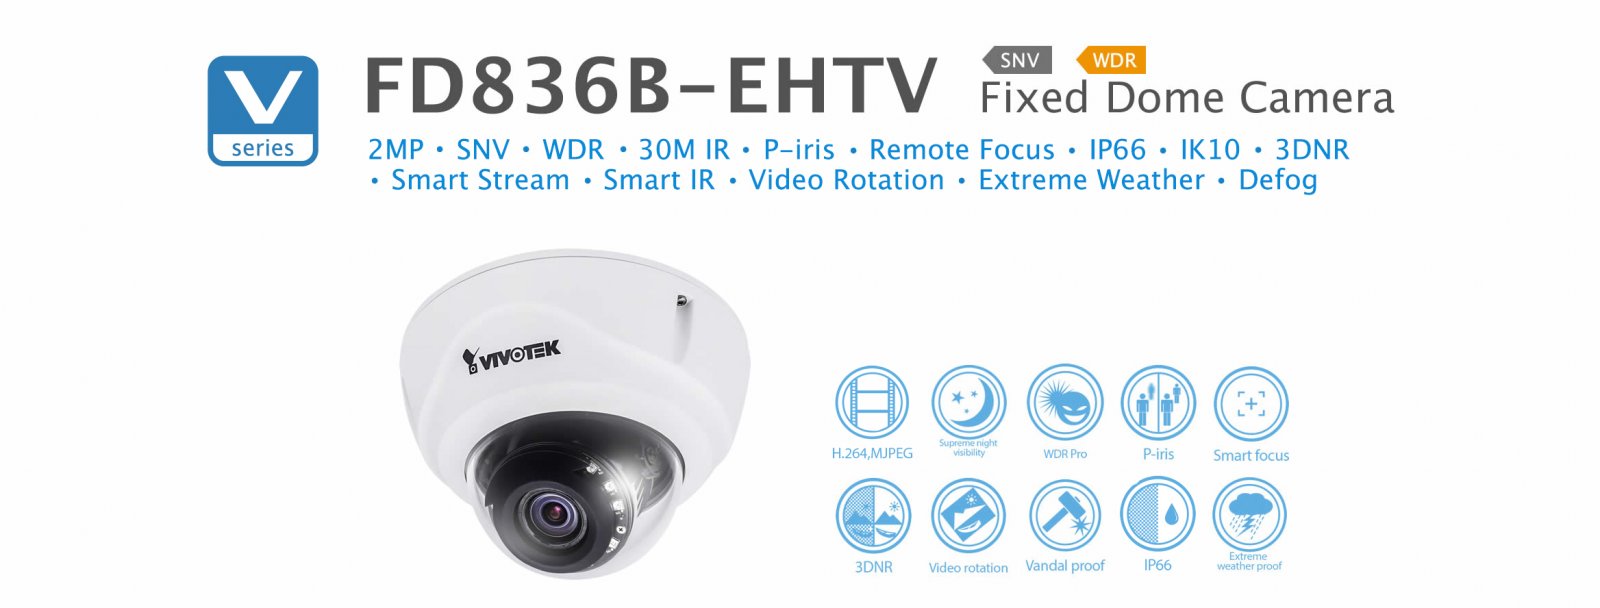 FD836B-EHTV. Vivotek Fixed Dome Camera